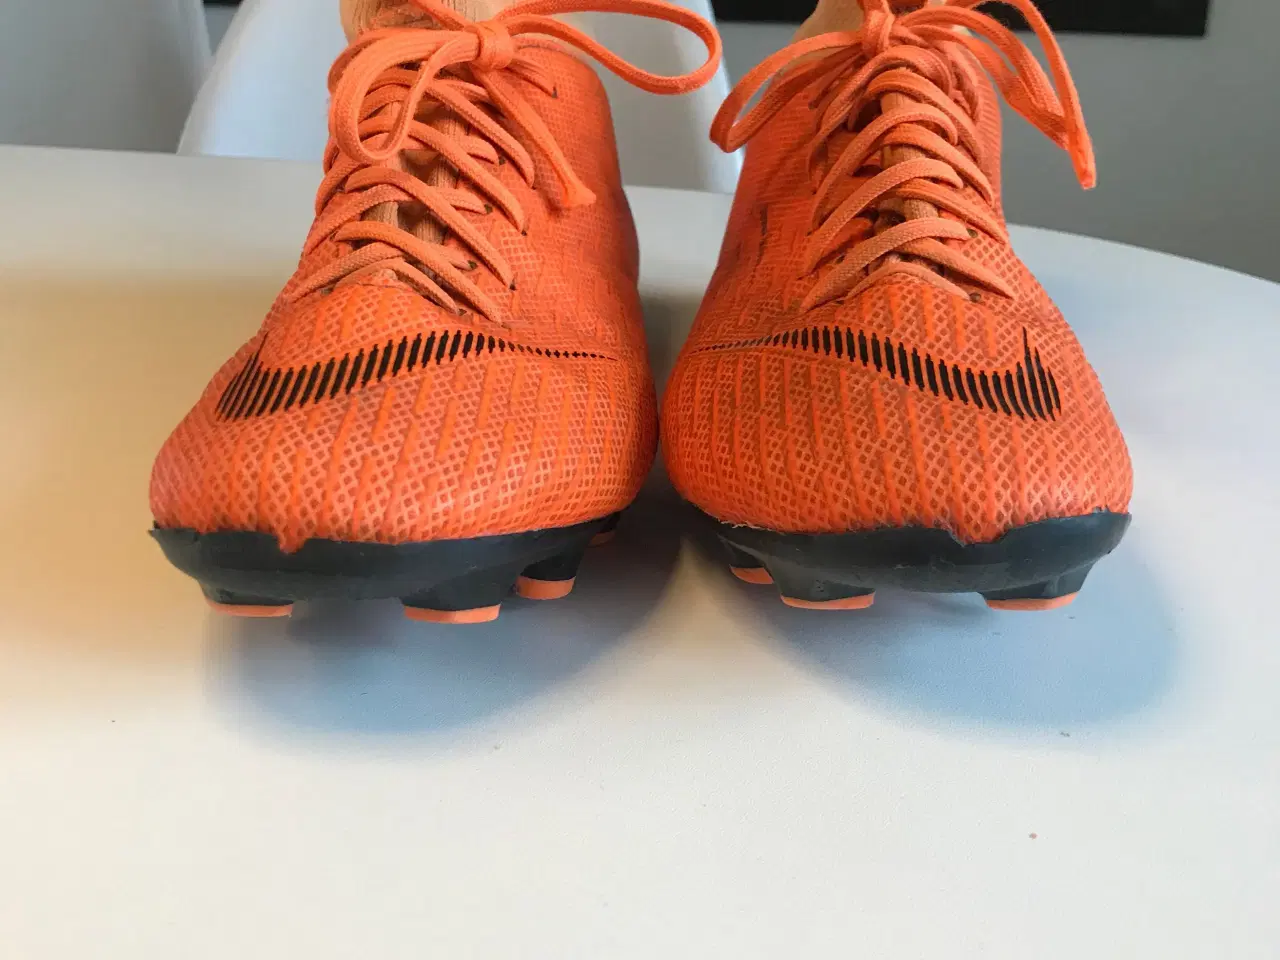 Billede 2 - Orange Nike fodboldstøvler str 36,5